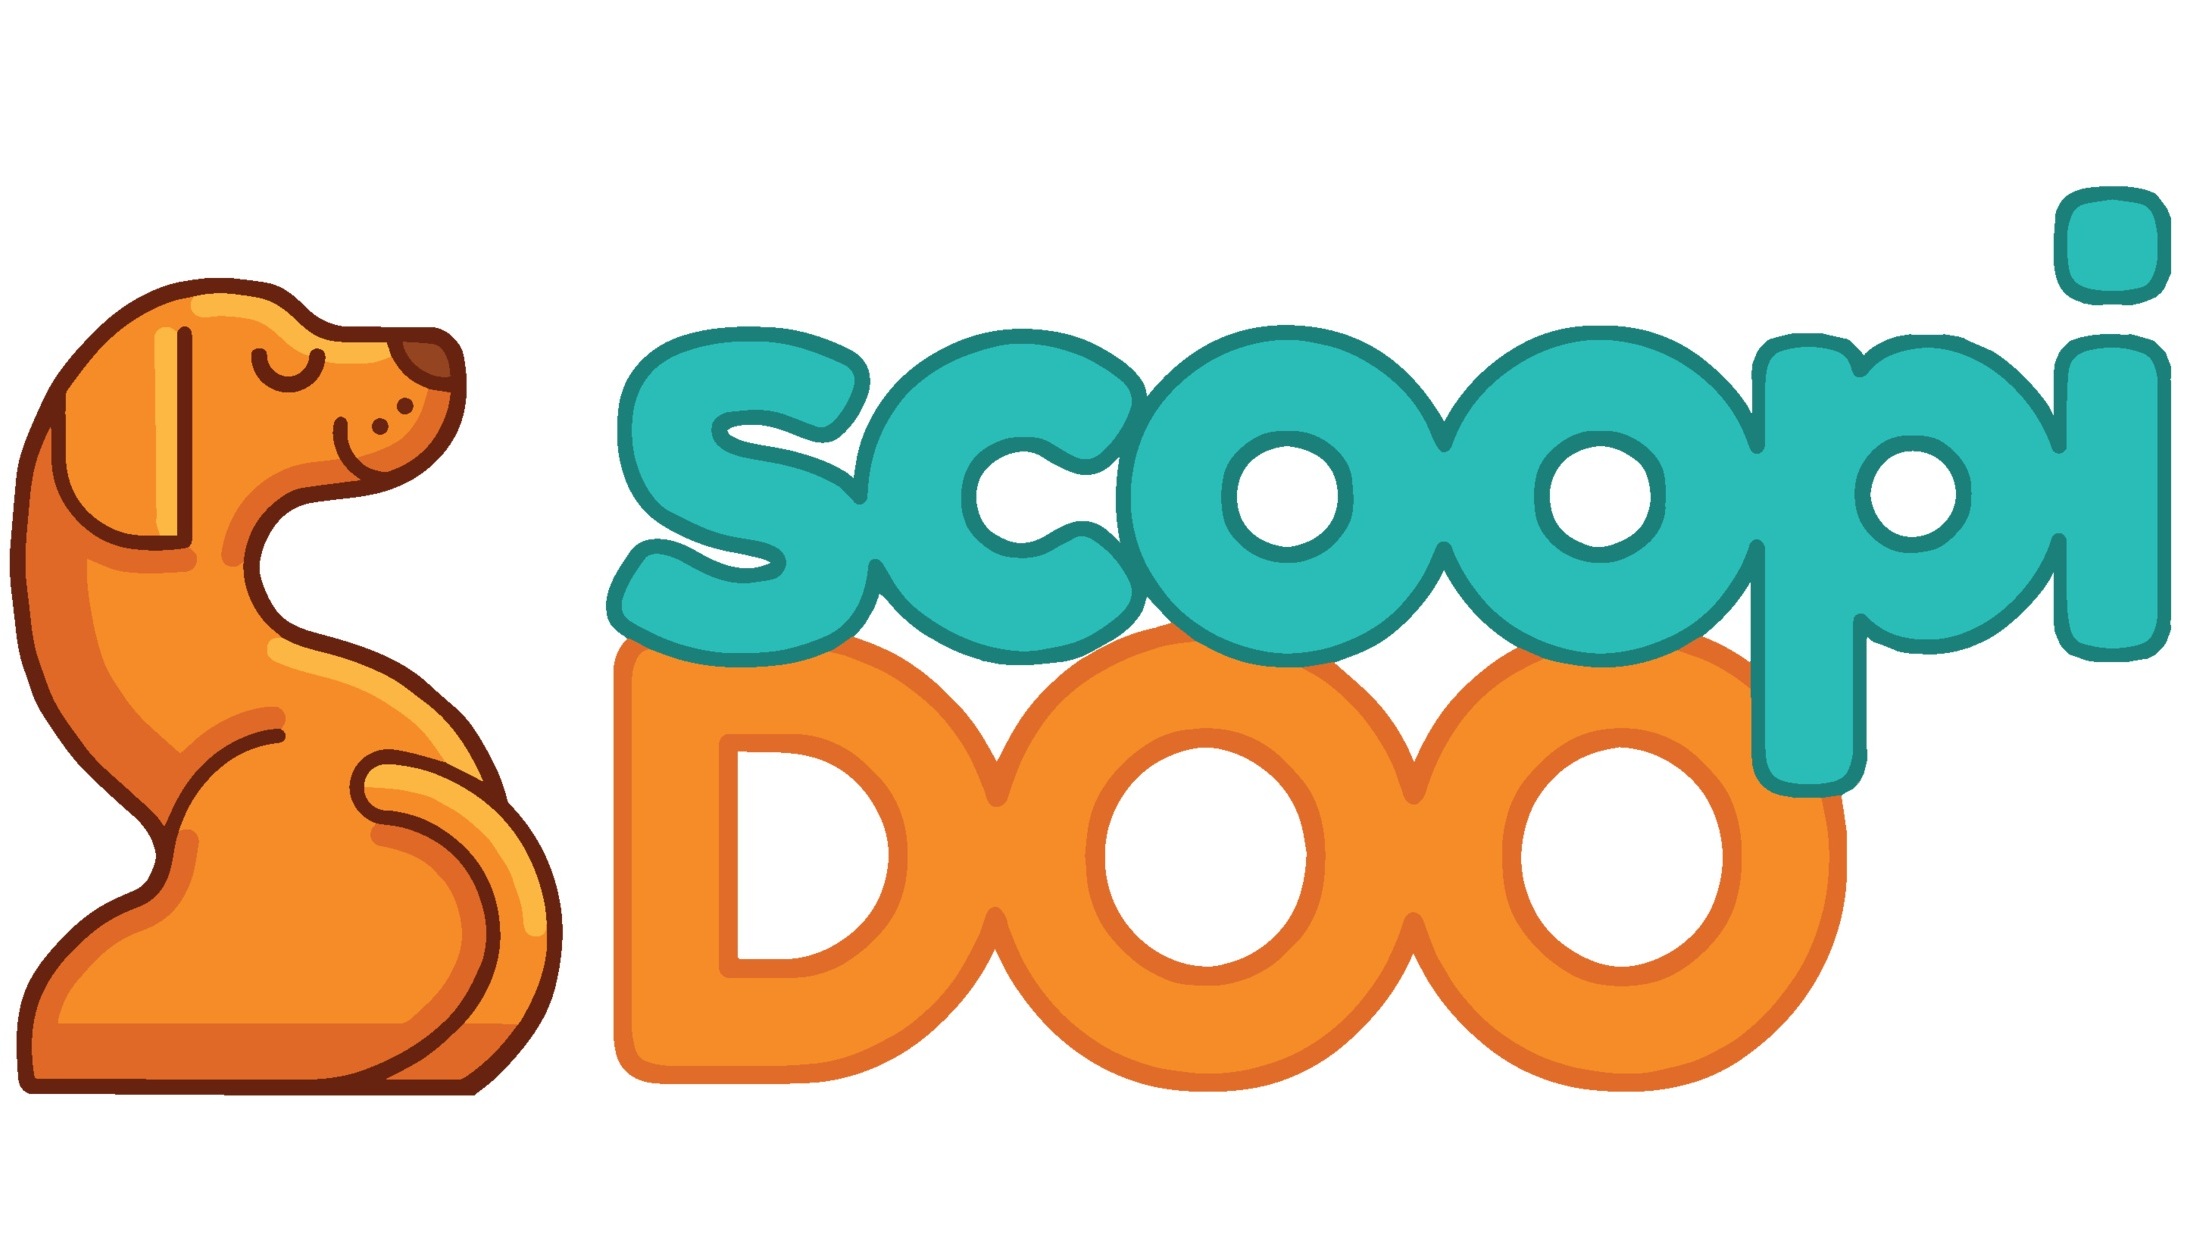 Scoopi Doo